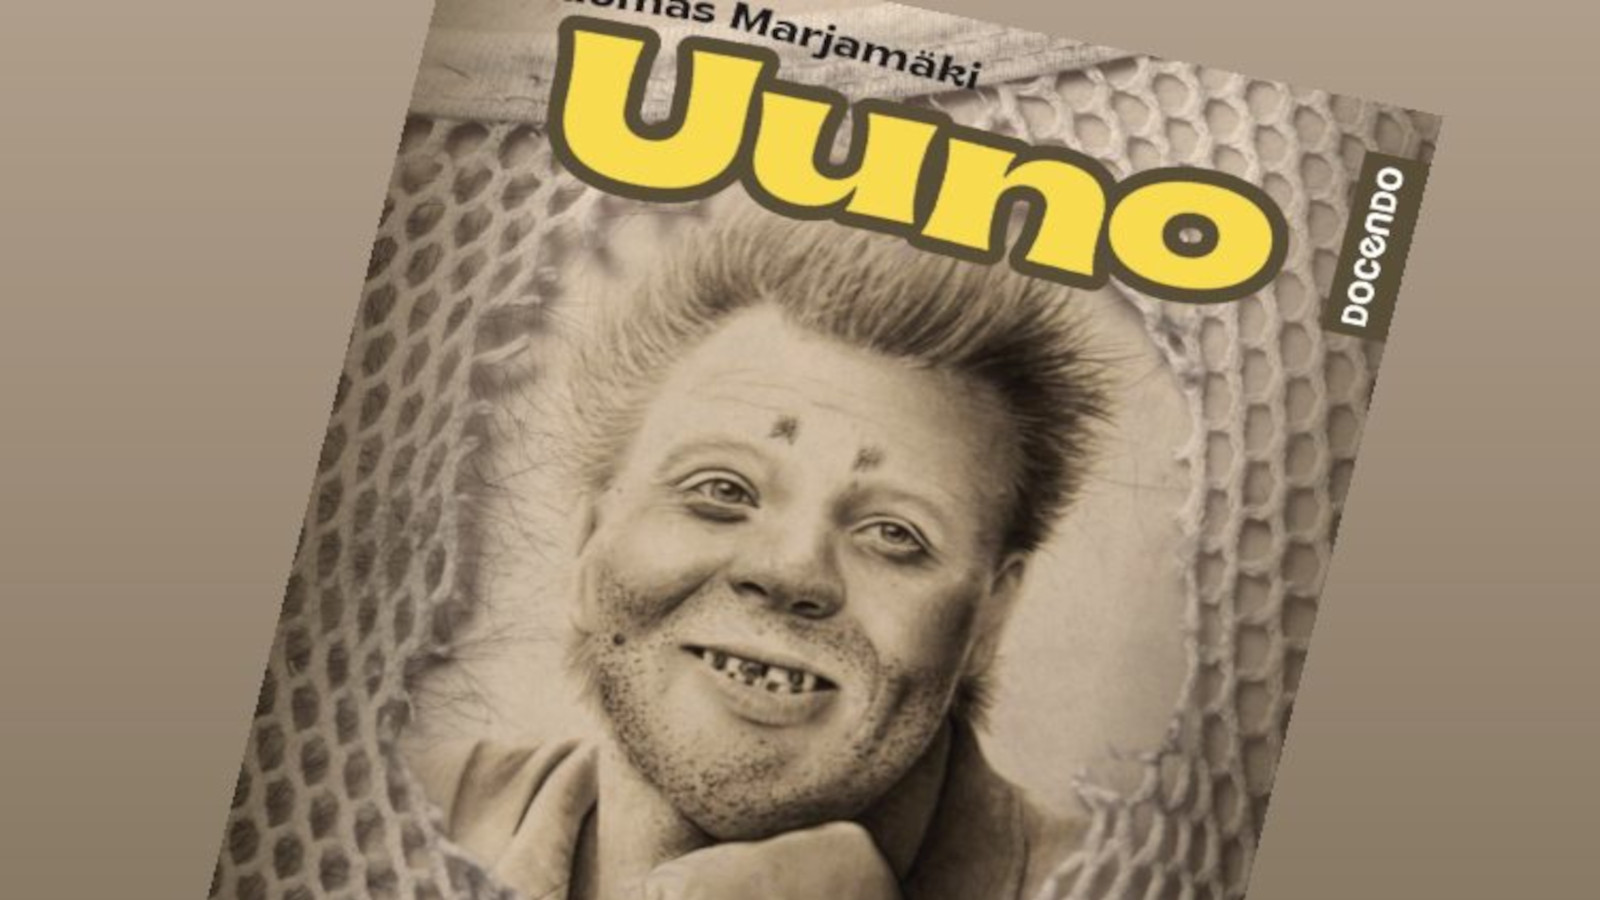 Uuno, Tuomas Marjamäki on koonnut Uuno Turhamäen koko tarinan vuosilta 1971-2021 yksiin kansiin ja on julkaistu 7.9.2021.